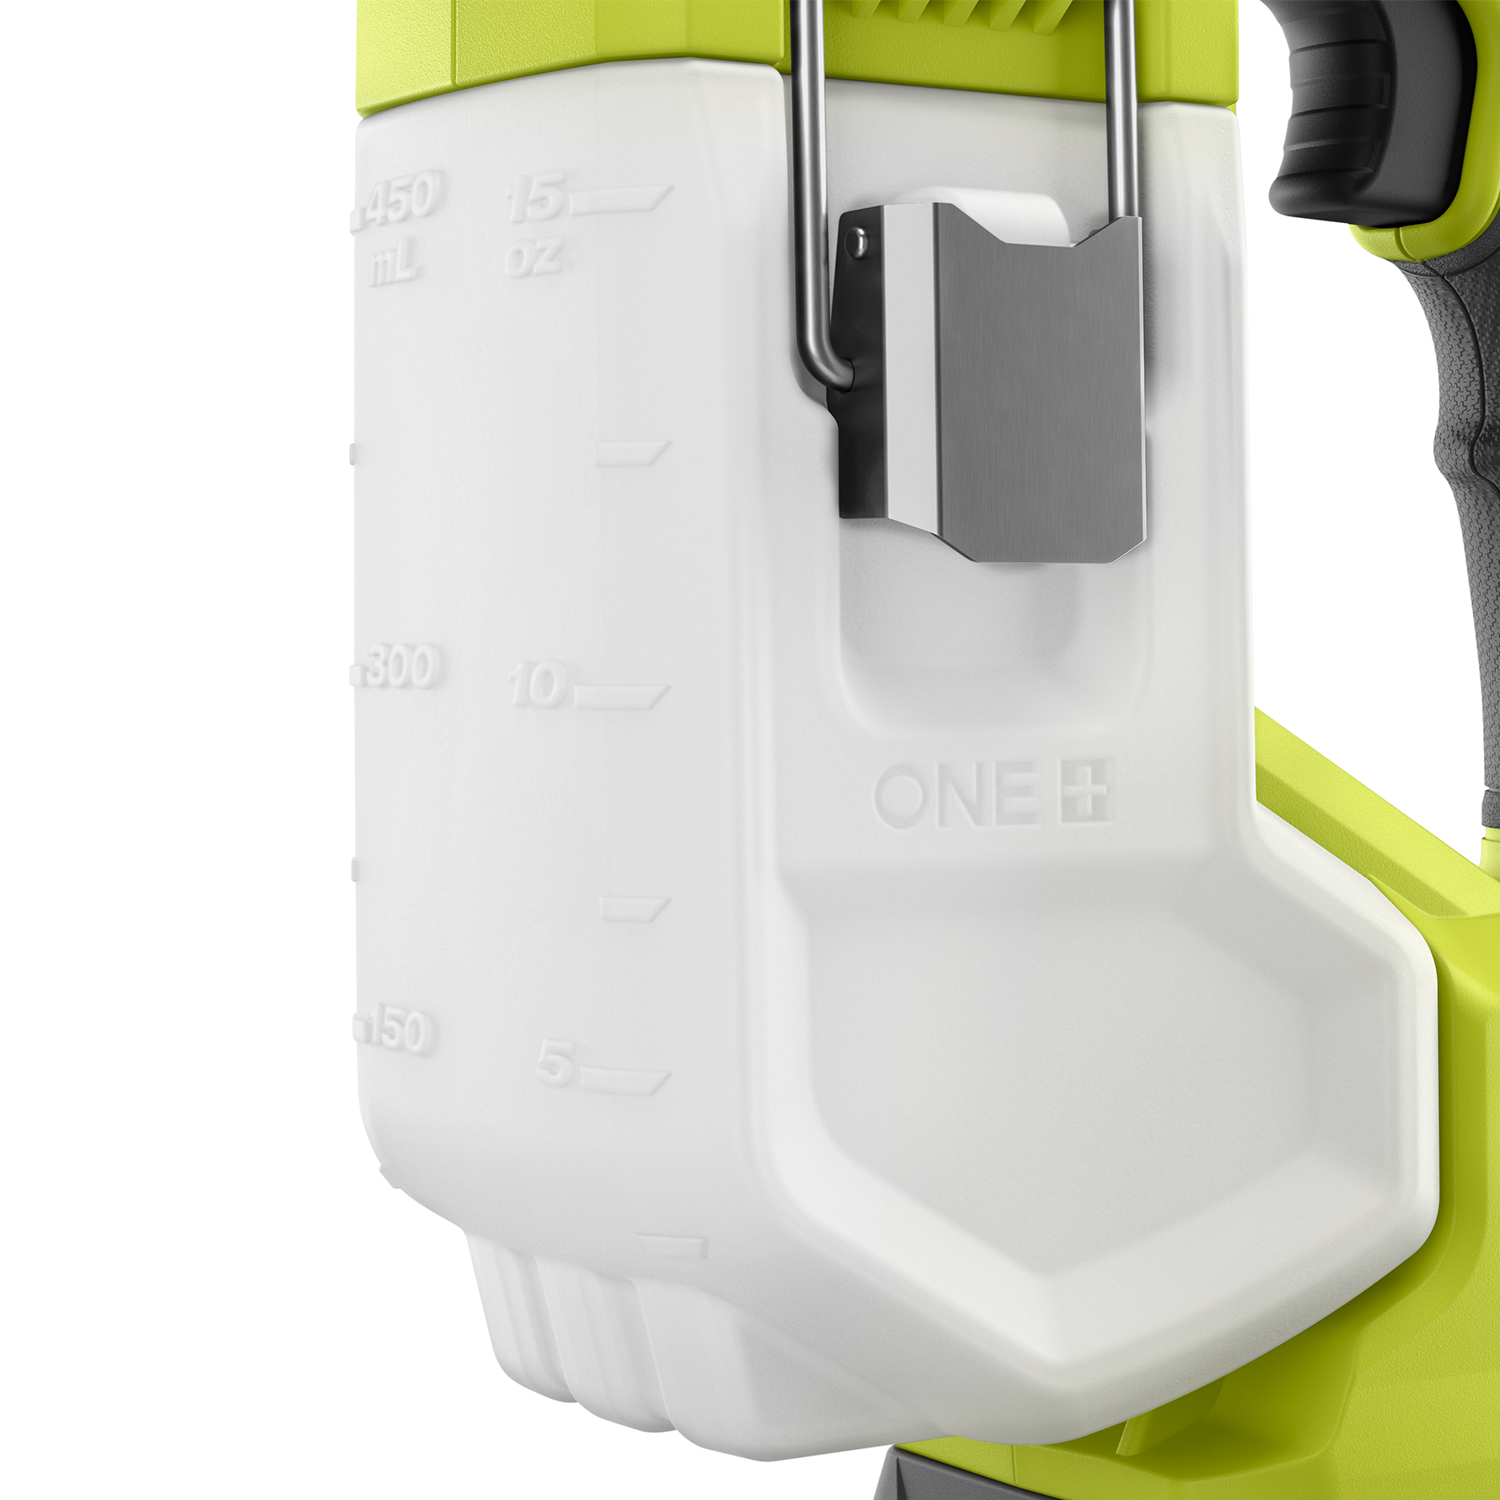 18V ONE+™ ProTip Handheld Paint Sprayer - RYOBI Tools